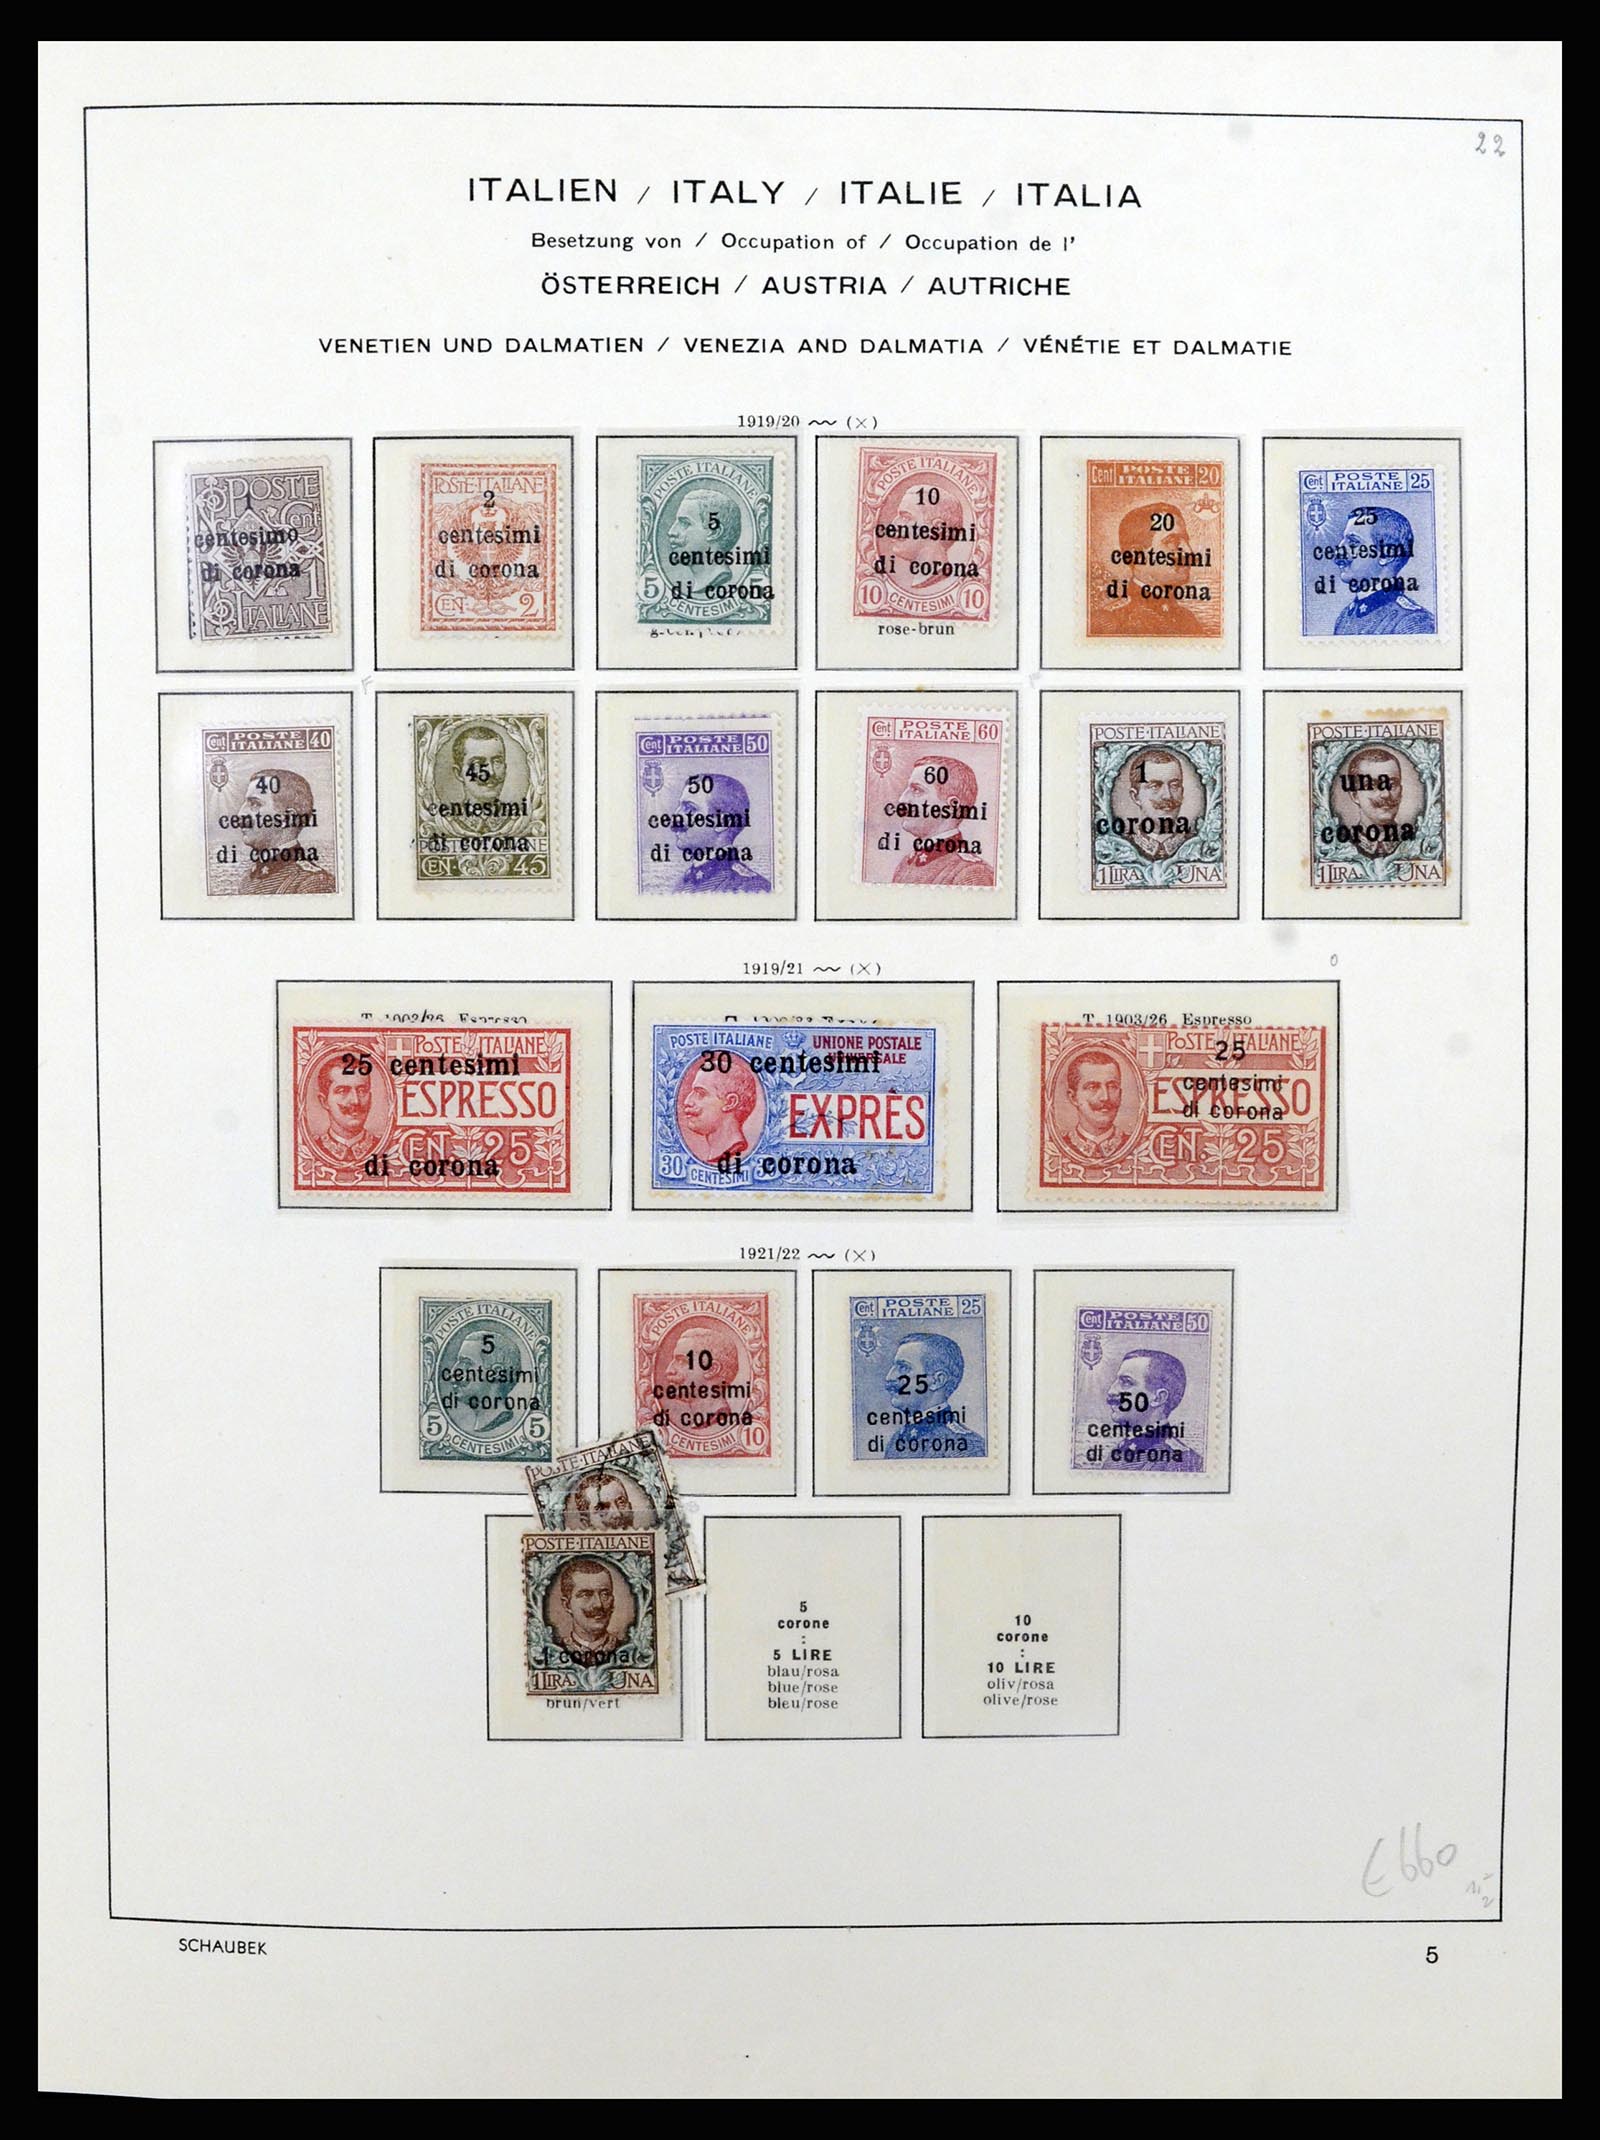 36577 009 - Stamp collection 36577 Italiaanse gebieden 1870-1940.